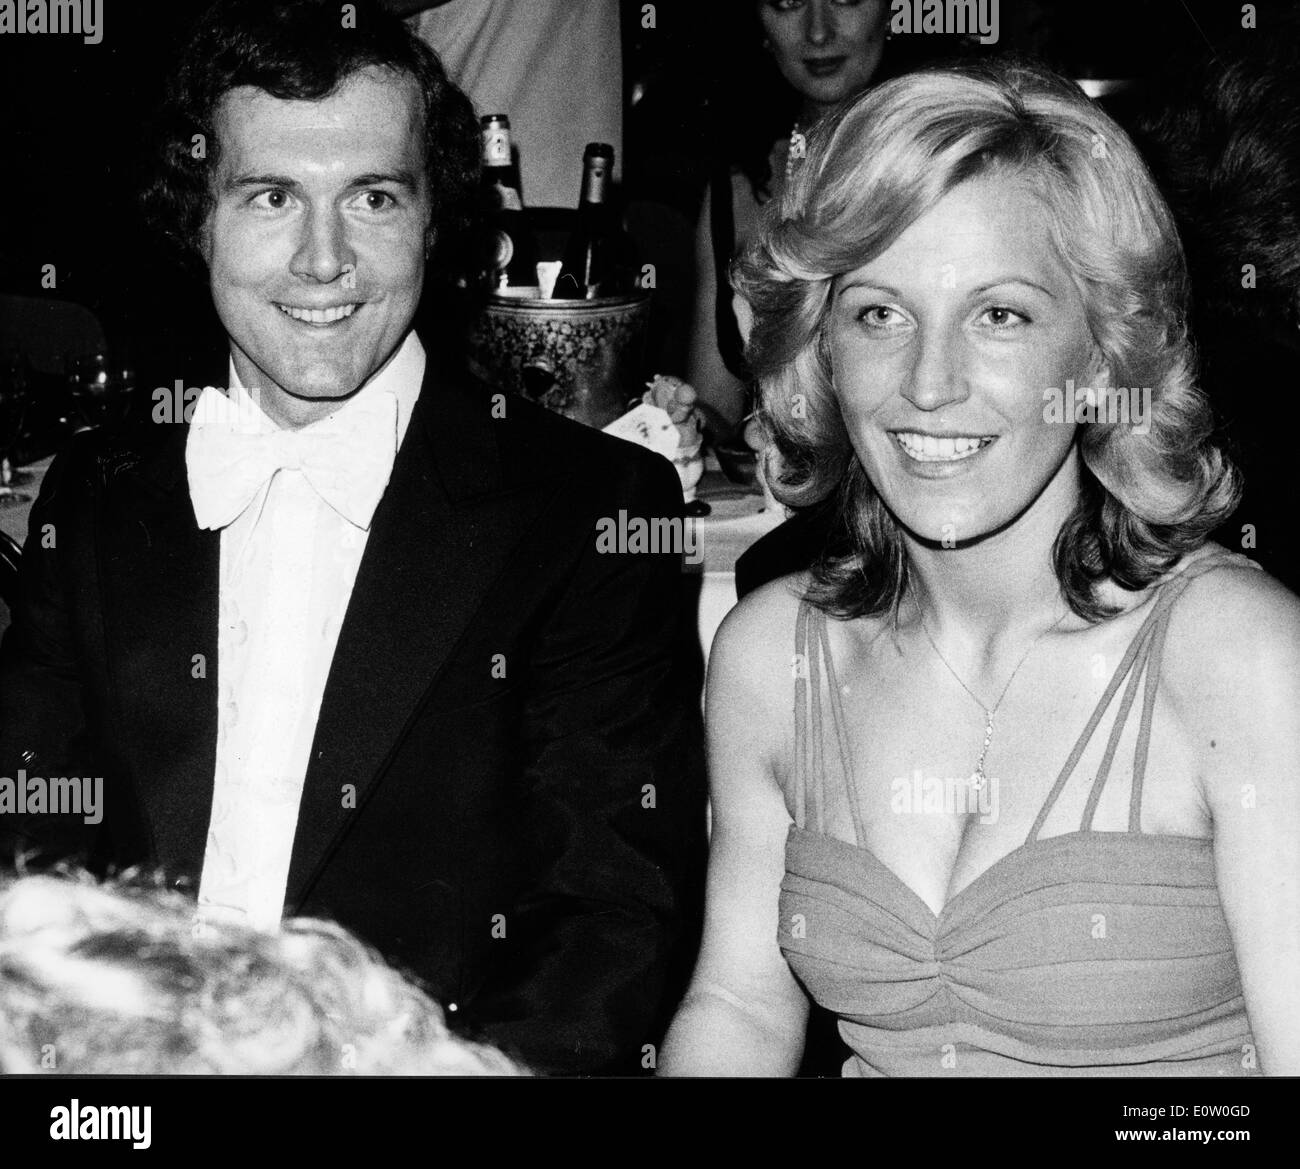 Franz Beckenbauer avec une femme lors d'un événement Banque D'Images